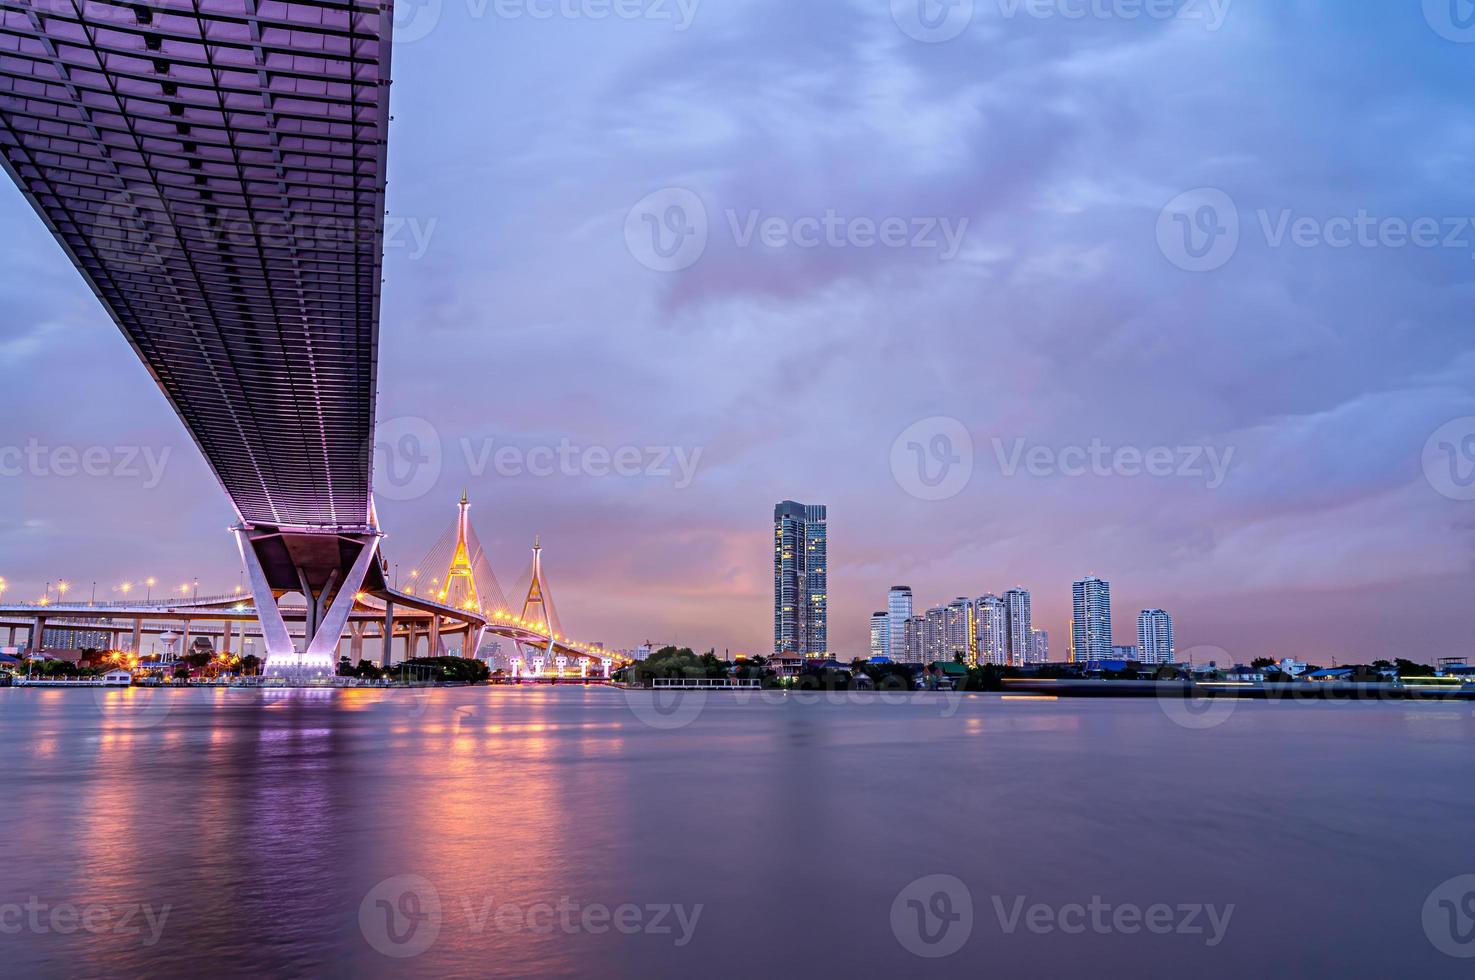 luce led viola sotto il ponte sul fiume in una giornata nuvolosa nel cielo. ponte bhumibol, samut prakan, tailandia foto